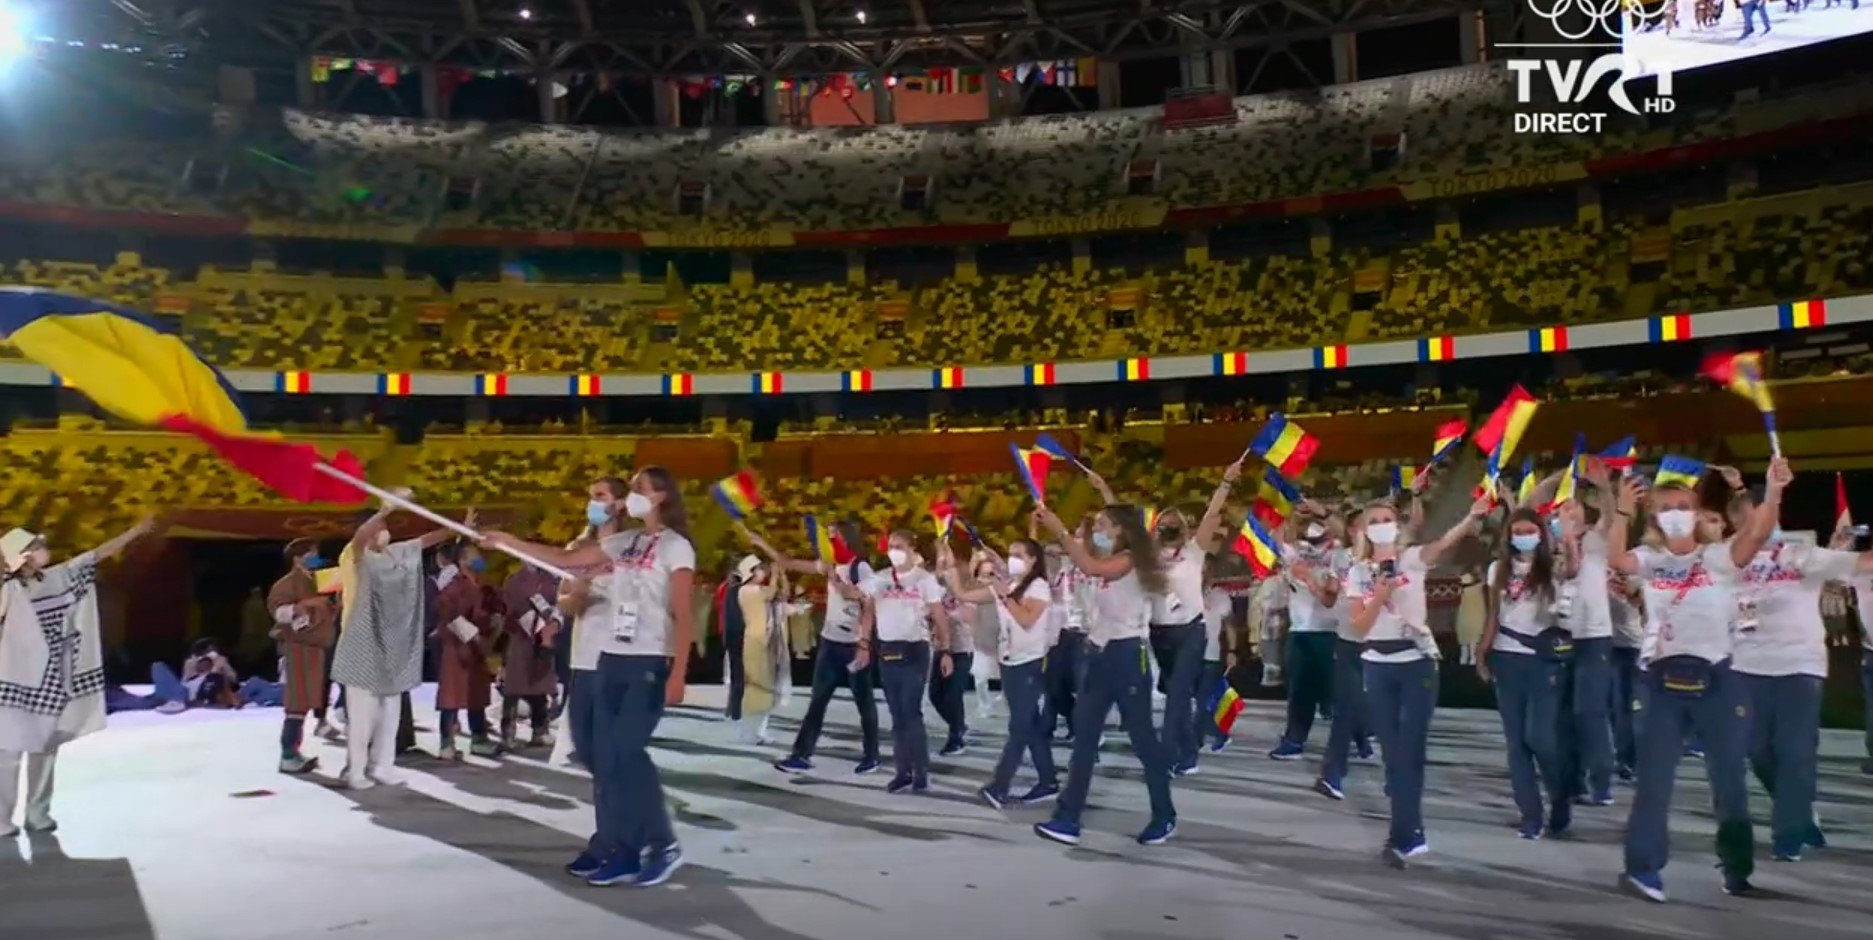 Echipa României, 101 sportivi, a defilat la ceremonia de deschidere a Jocurilor Olimpice Tokyo 2020